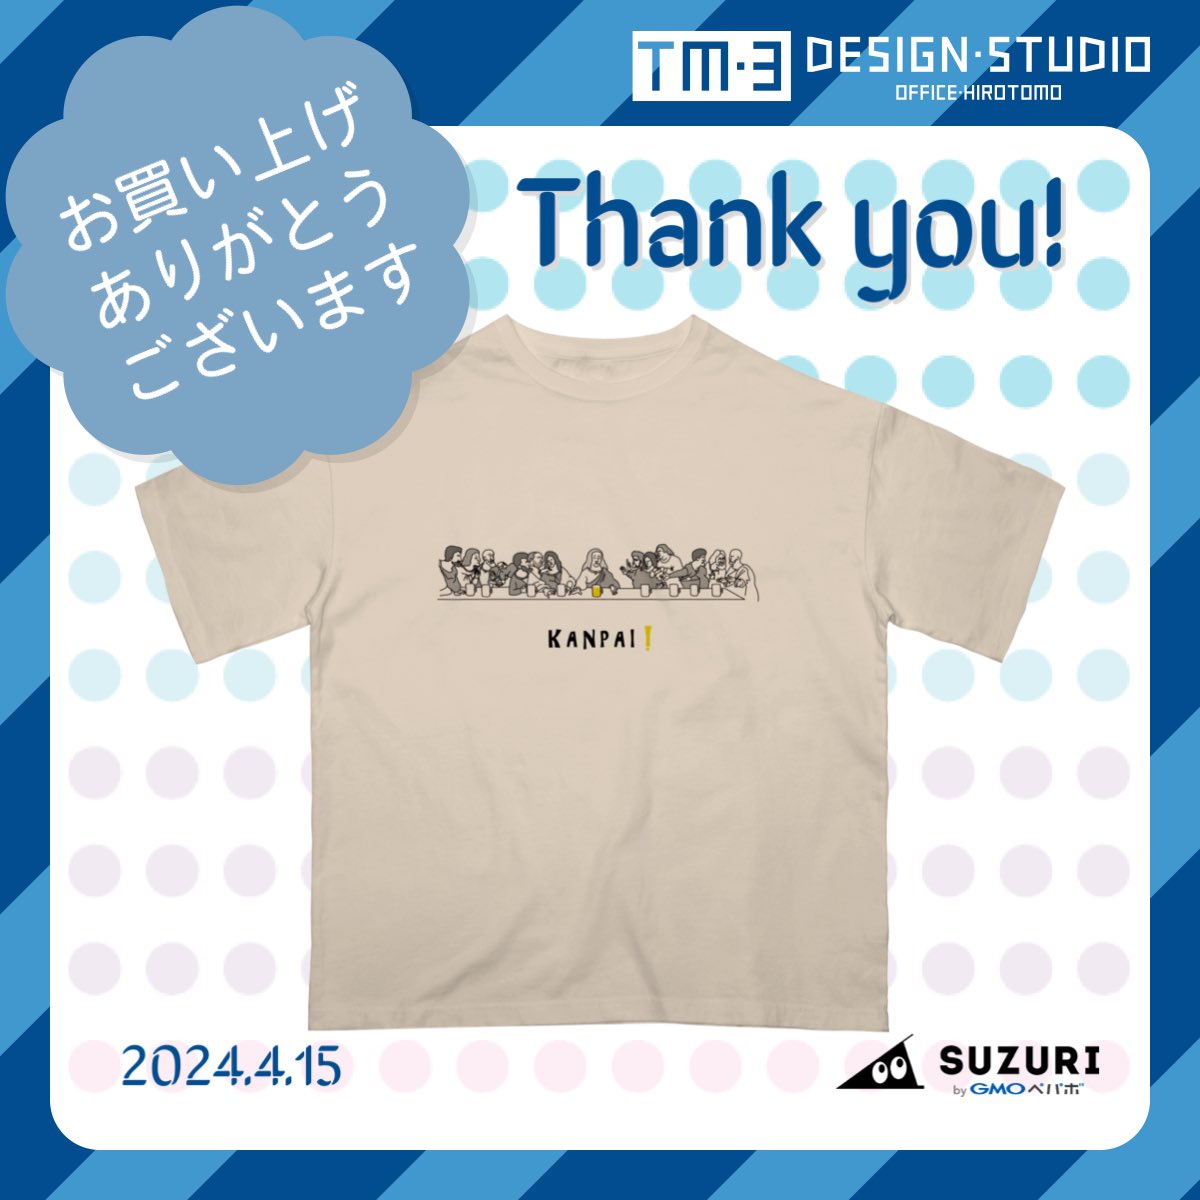 お買い上げ誠にありがとうございます🙇‍♂️🙇‍♀️

｢最後の晩餐×BEER｣
オーバーサイズTシャツ  サンドベージュ
👉 suzuri.jp/office-hirotom…

きっと気に入っていただけると思います
KANPAI❣️🍻

#SUZURI #レオナルドダヴィンチ 
#最後の晩餐 #ビール